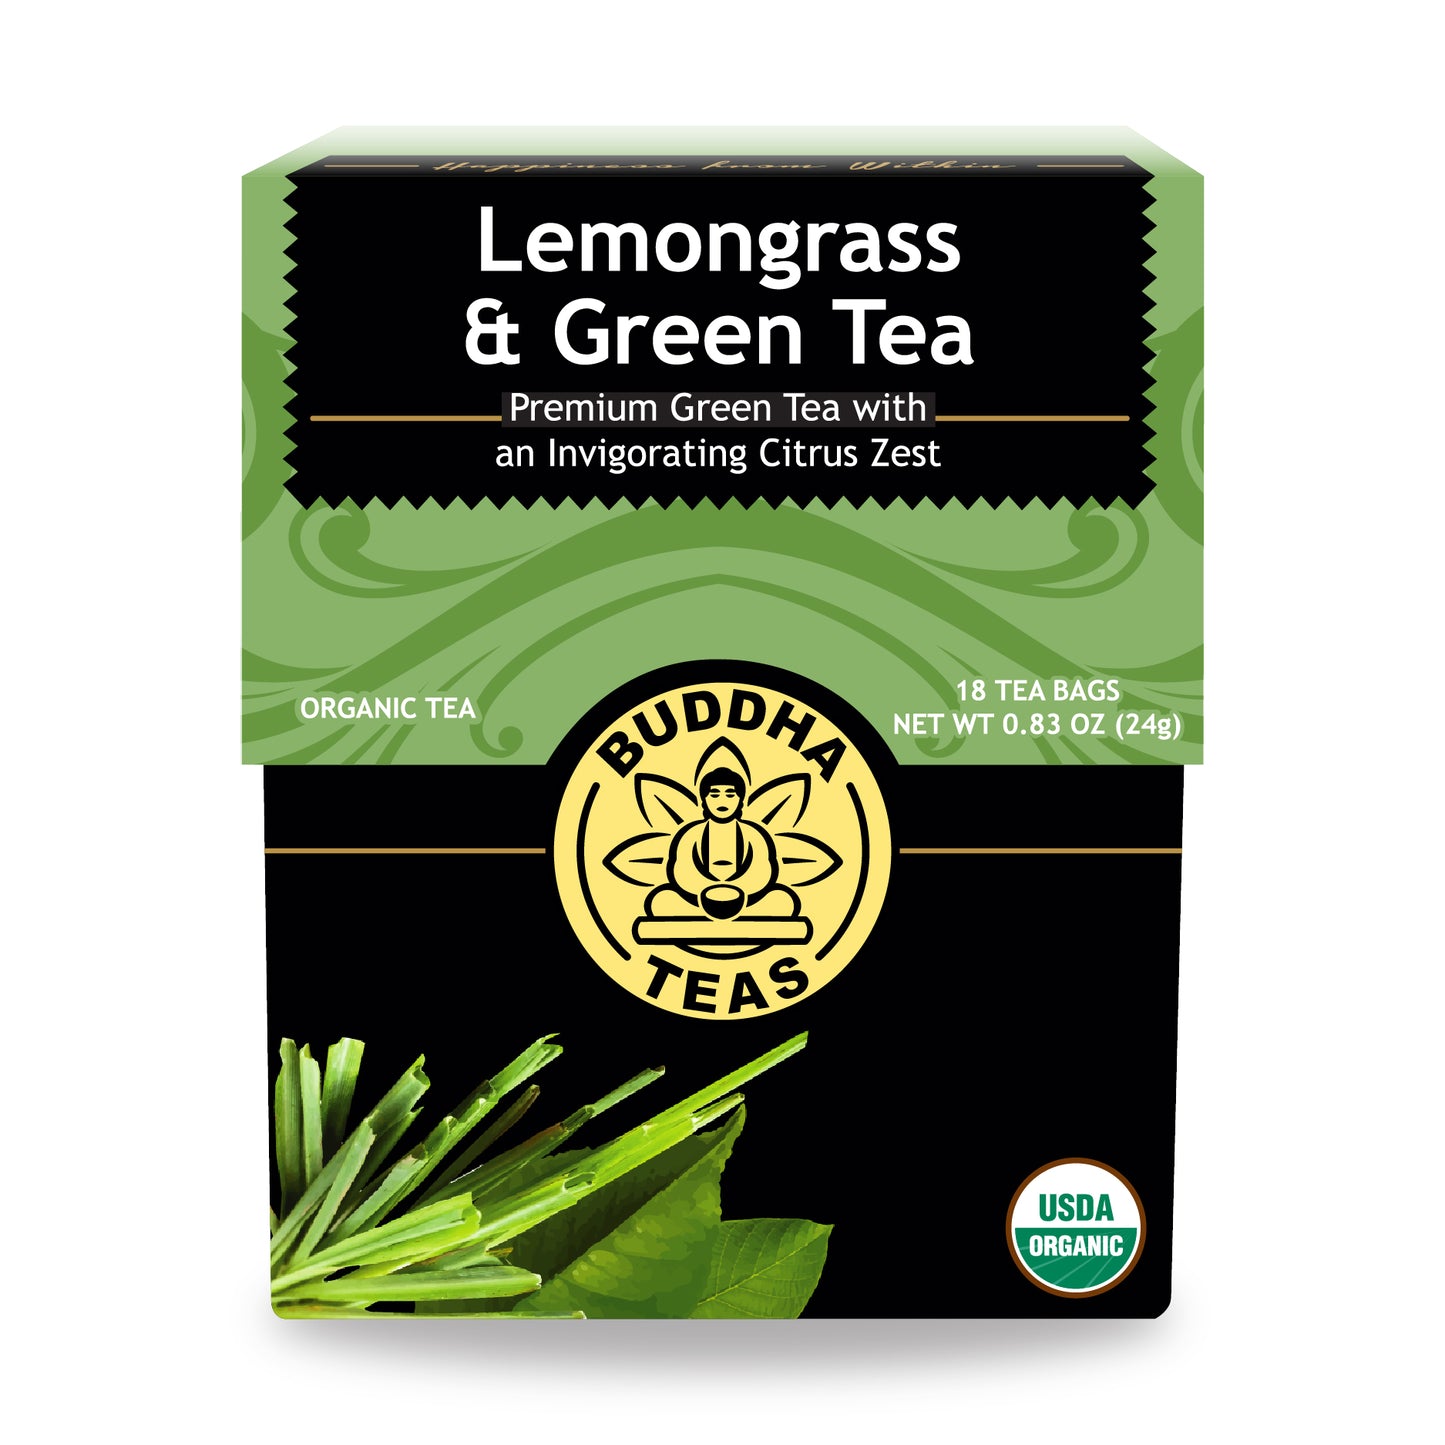 Lemongrass & Green Tea